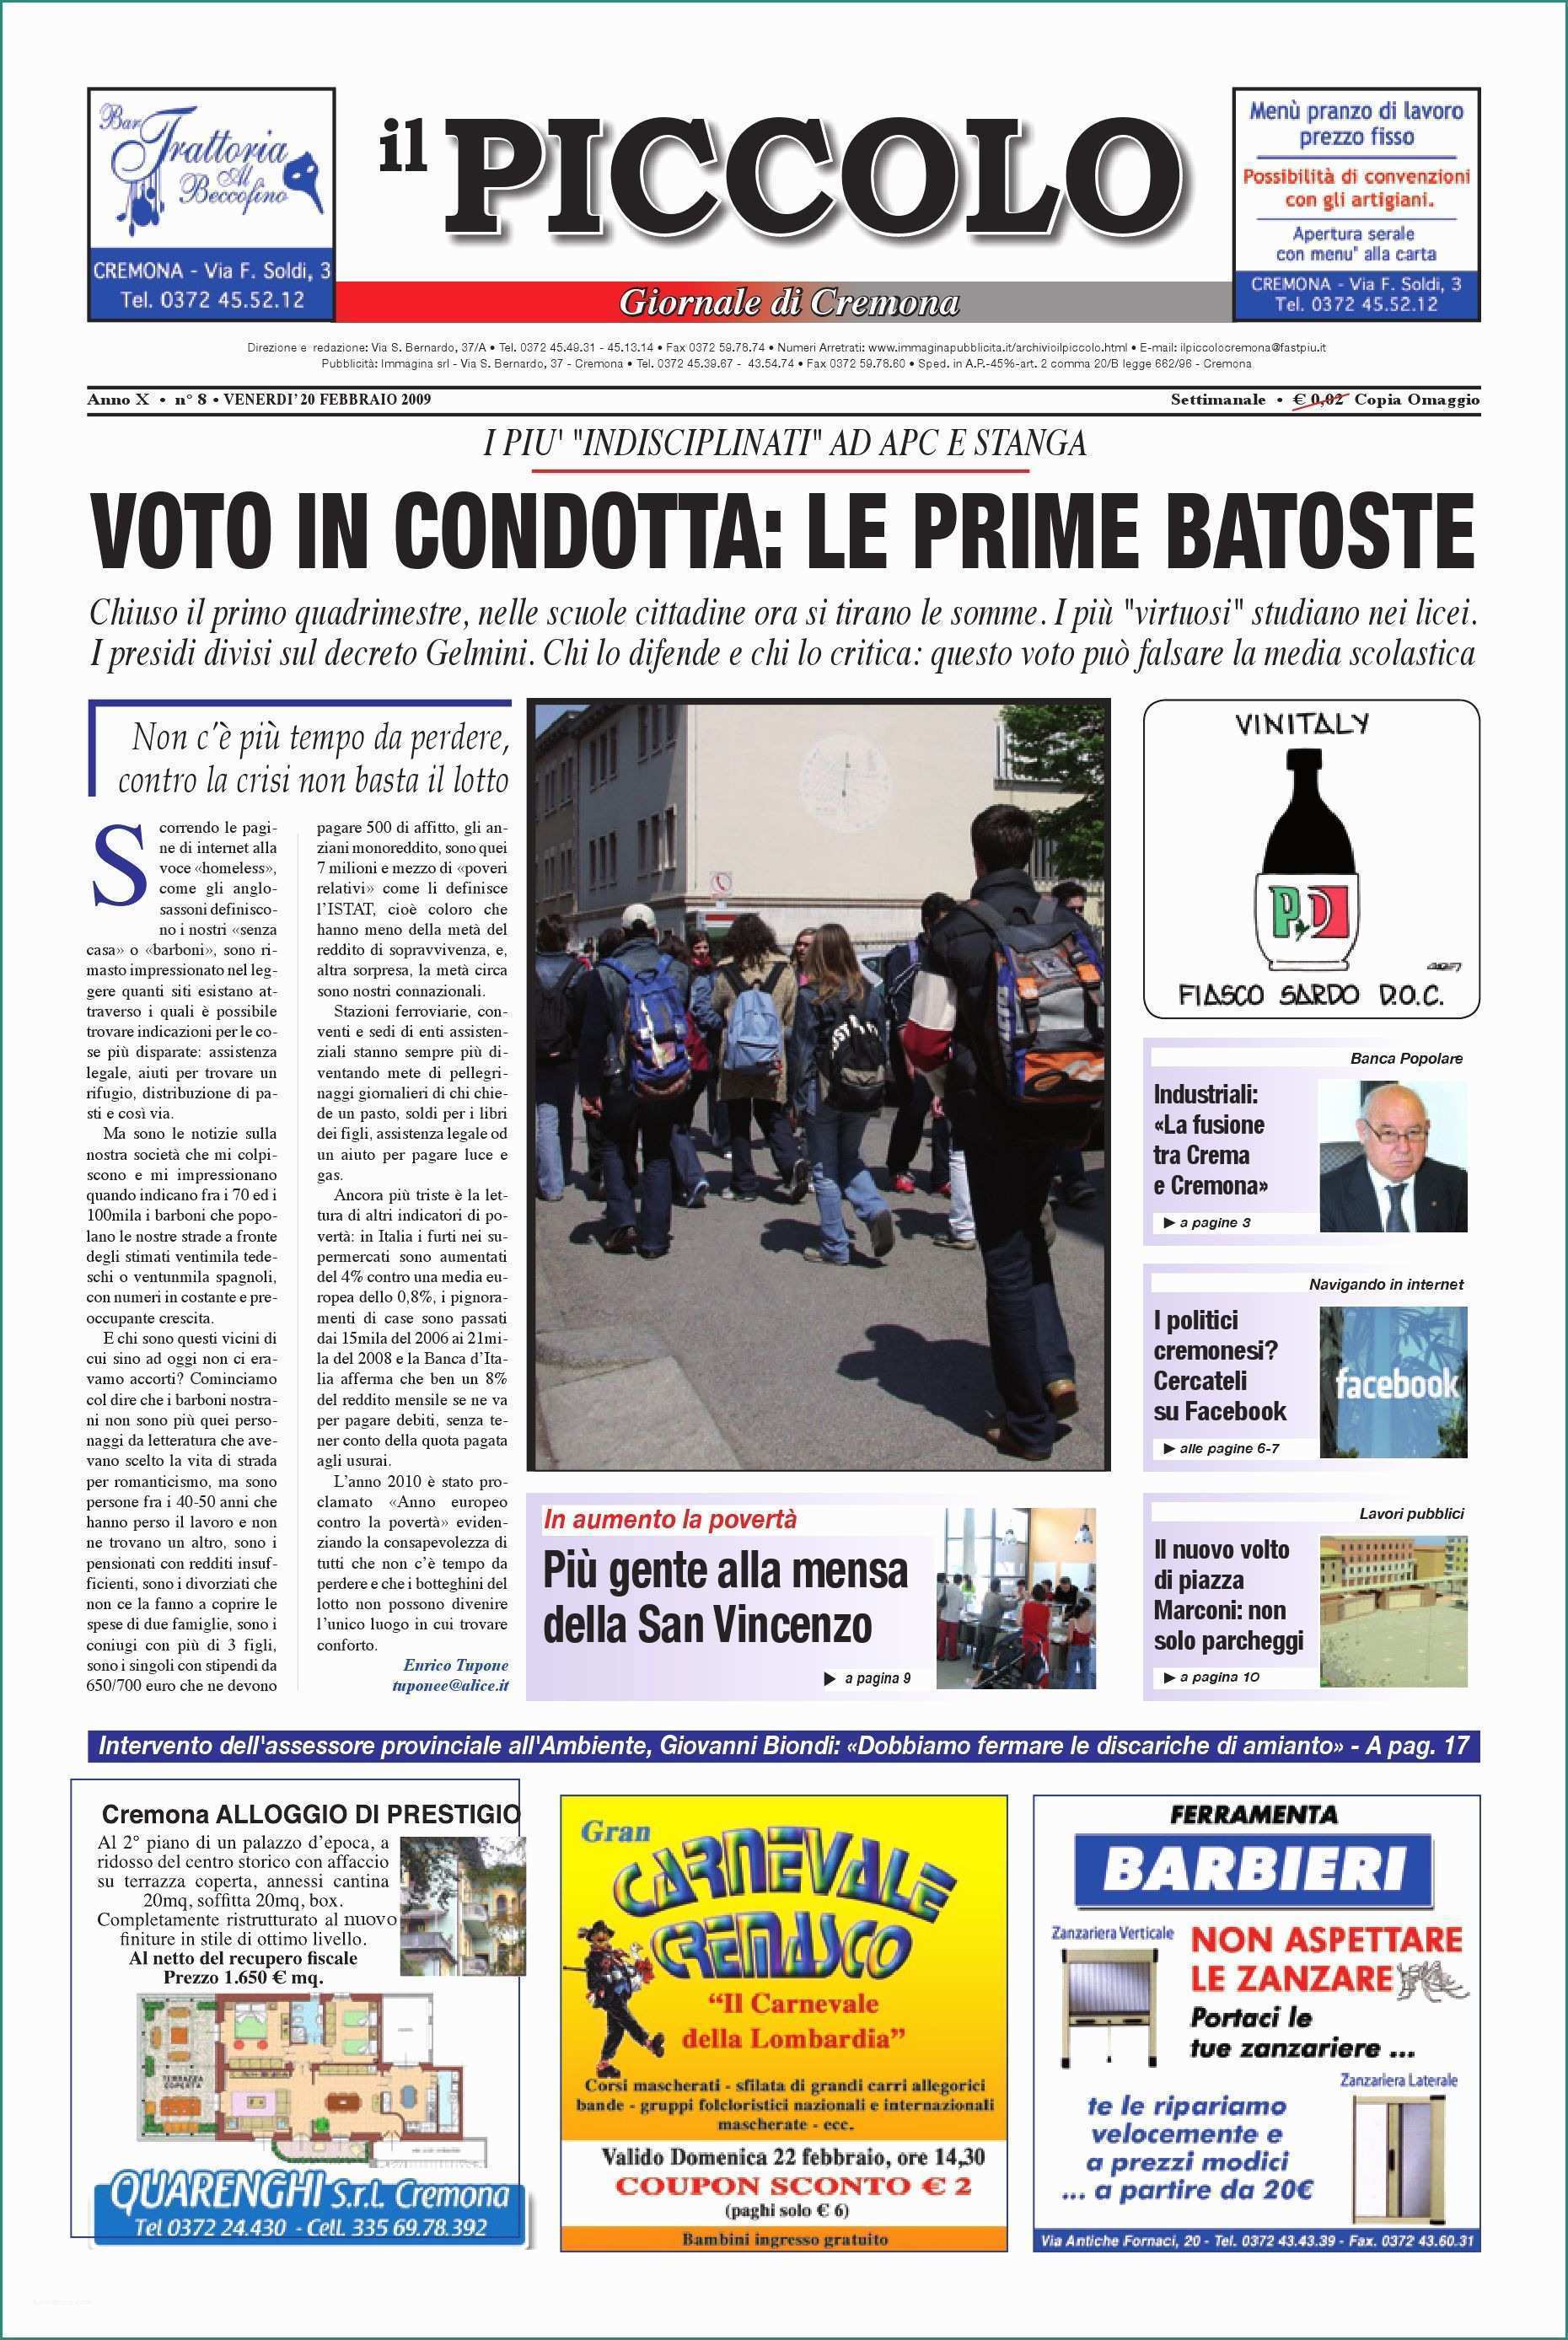 Catalogo Premi Esselunga E Il Piccolo Di Cremona by Promedia Promedia issuu